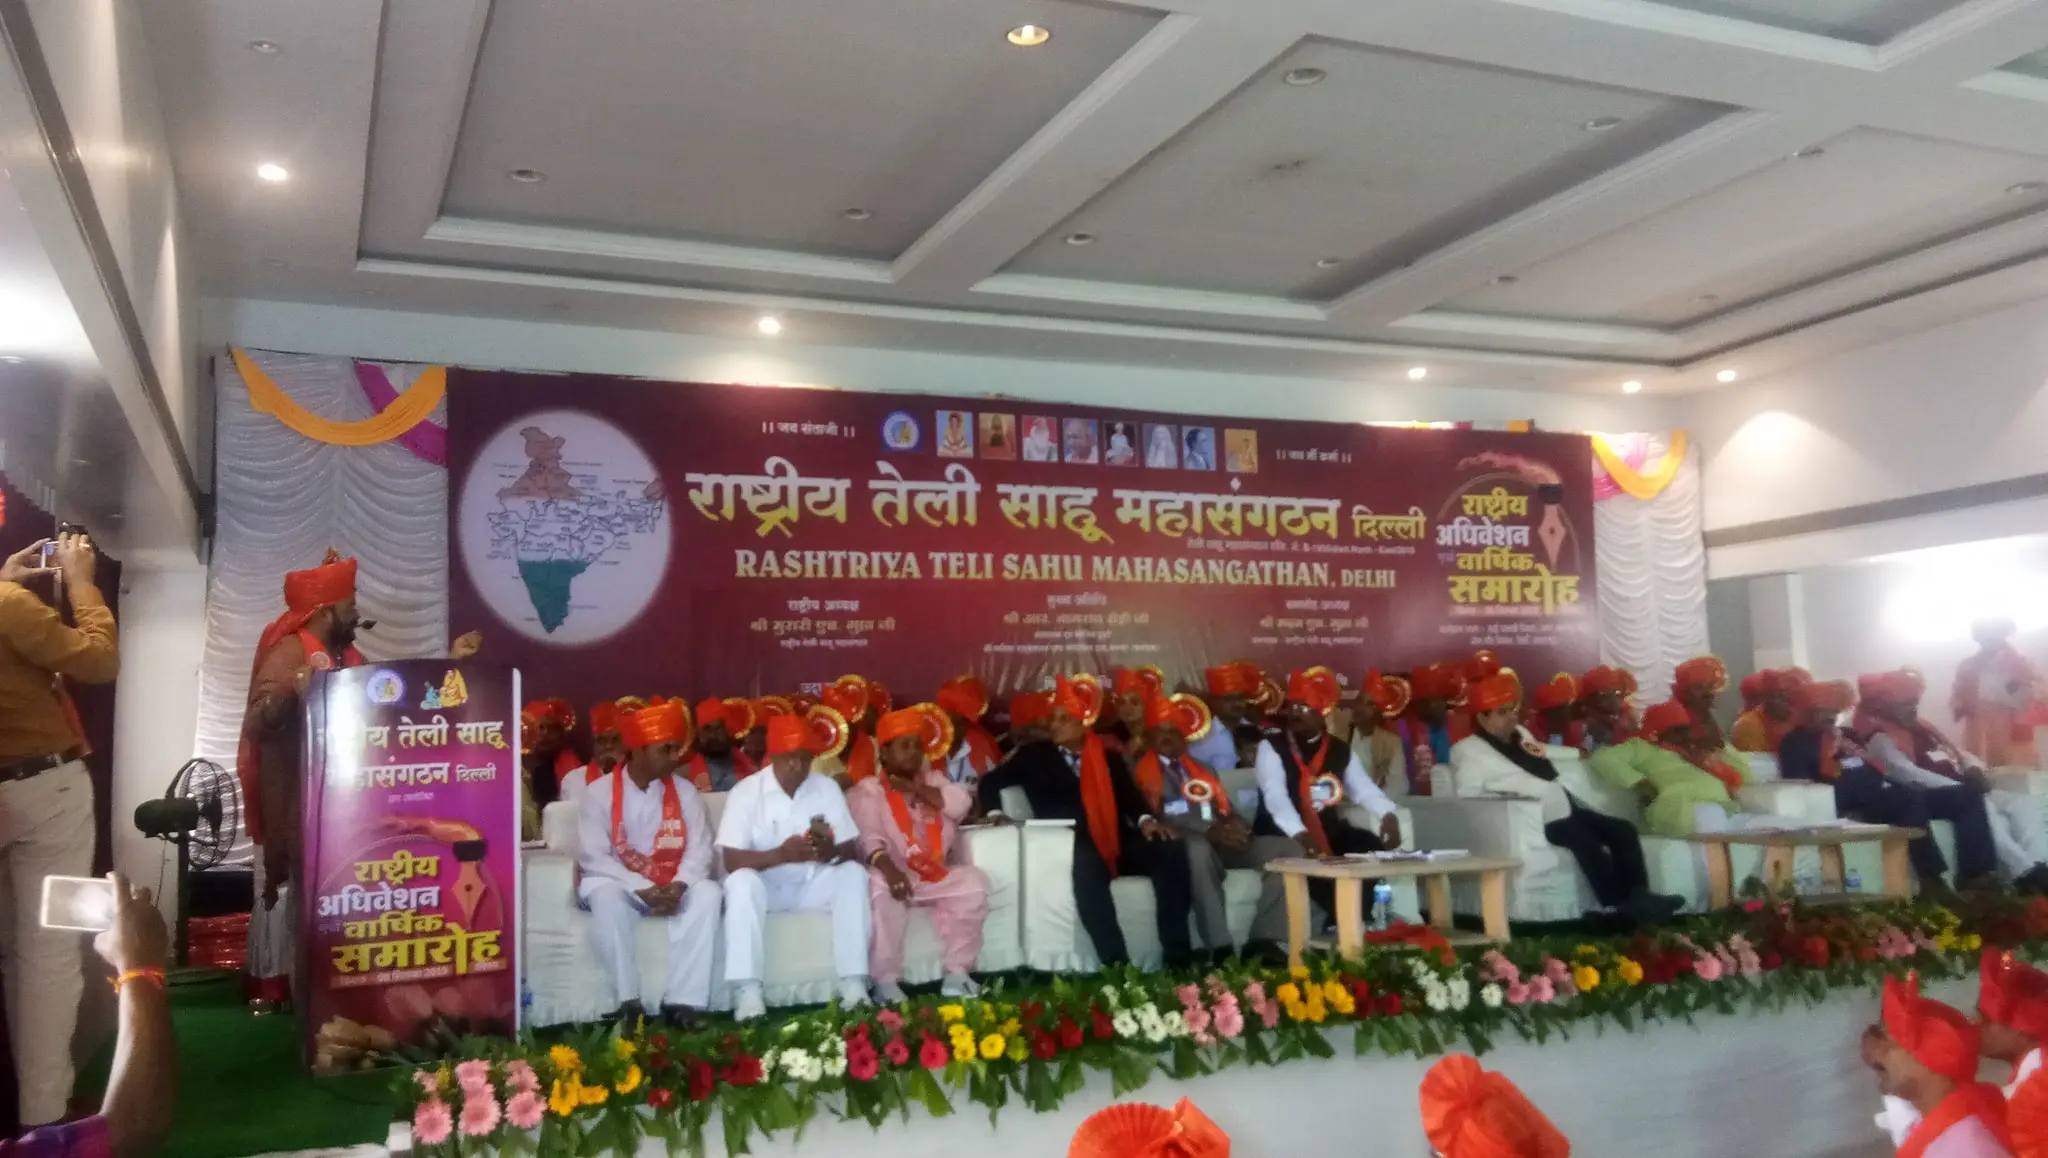 Rashtriya teli Sahu MahaSangathan rashtriya adhiveshan annual function Shirdi Maharashtra